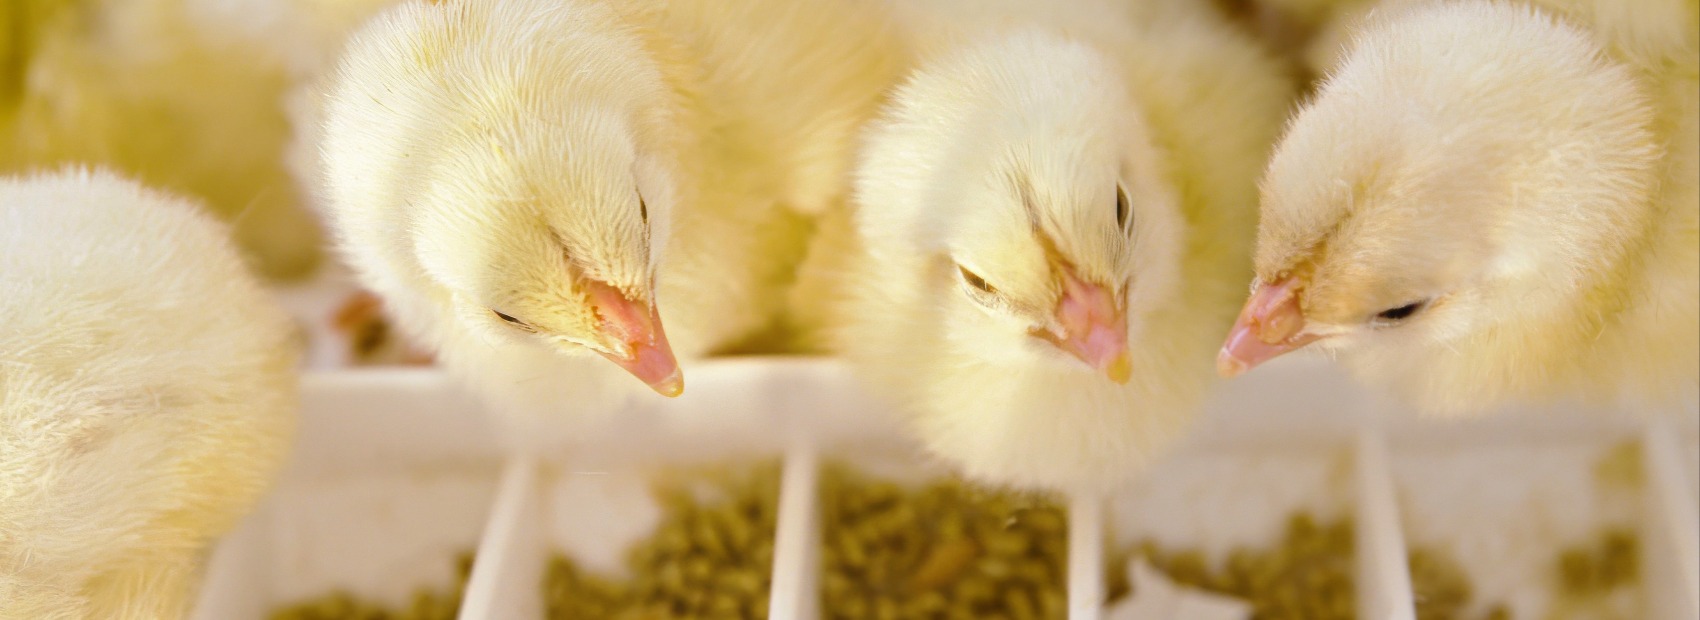 Norsk Kylling er først i Norge med ny klekketeknologi for kylling